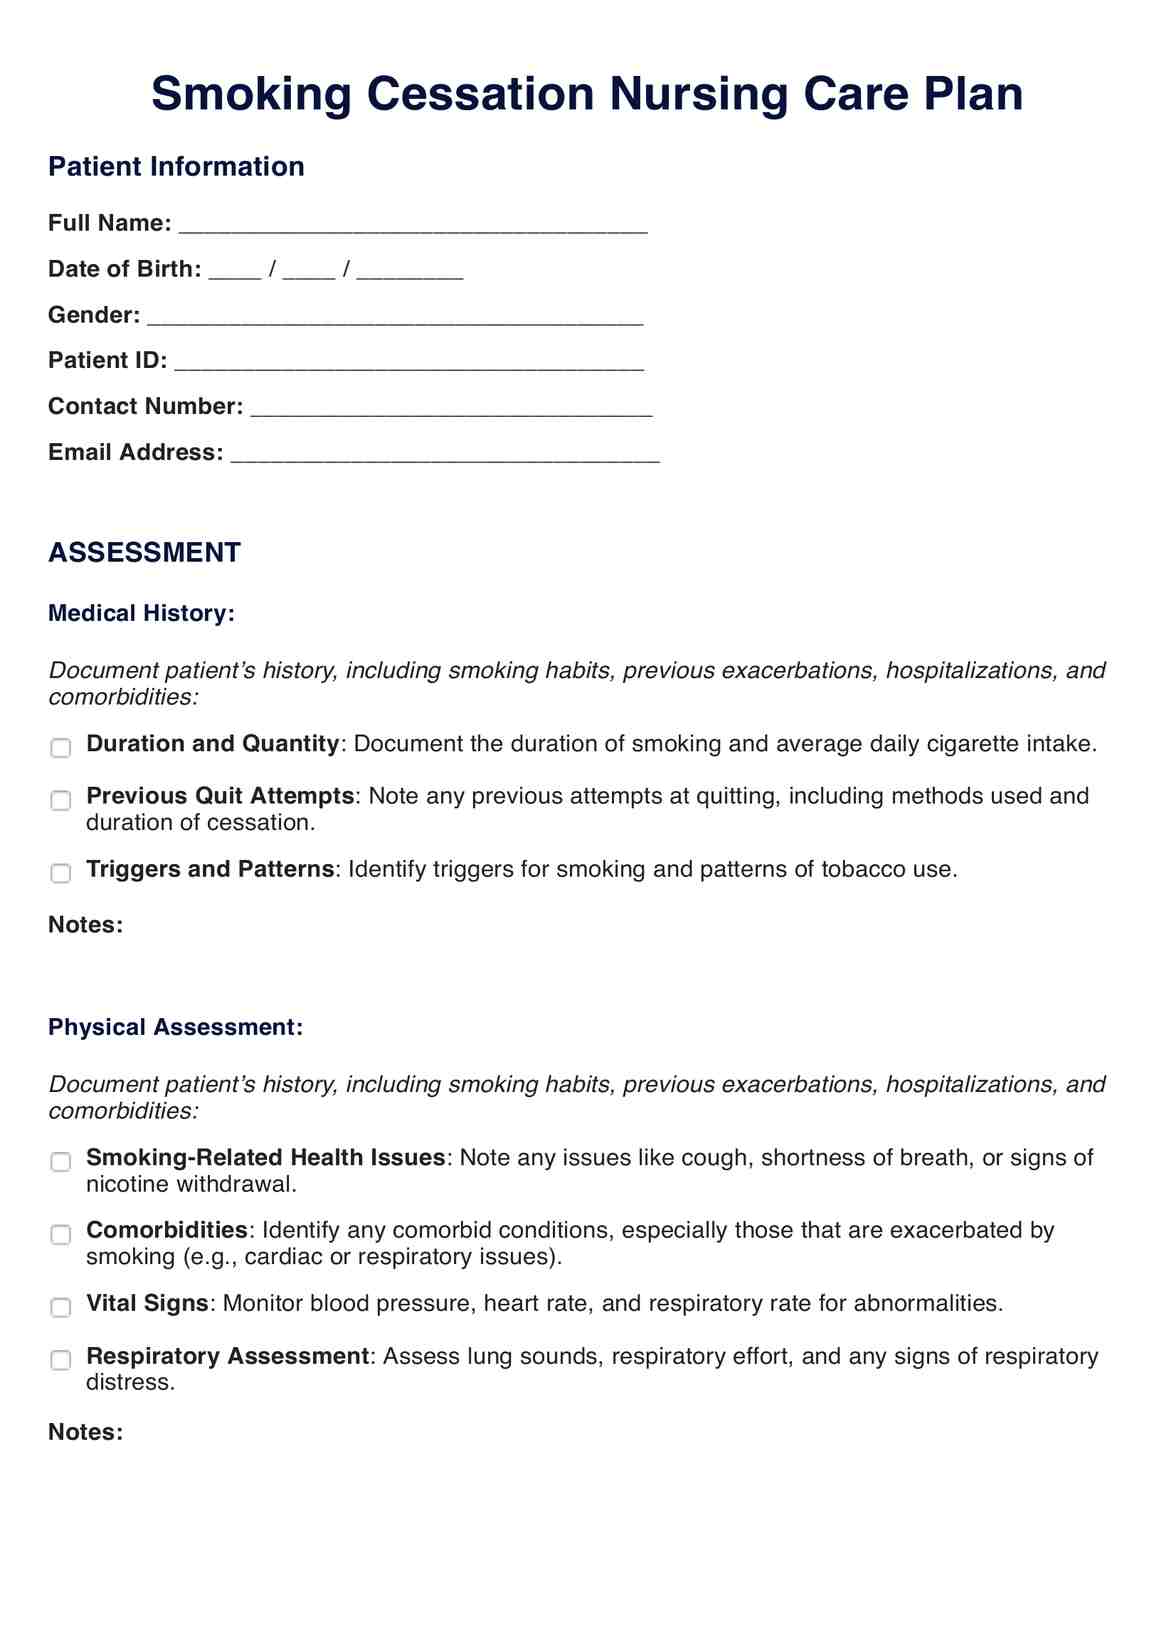 Smoking Cessation Nursing Care Plan PDF Example